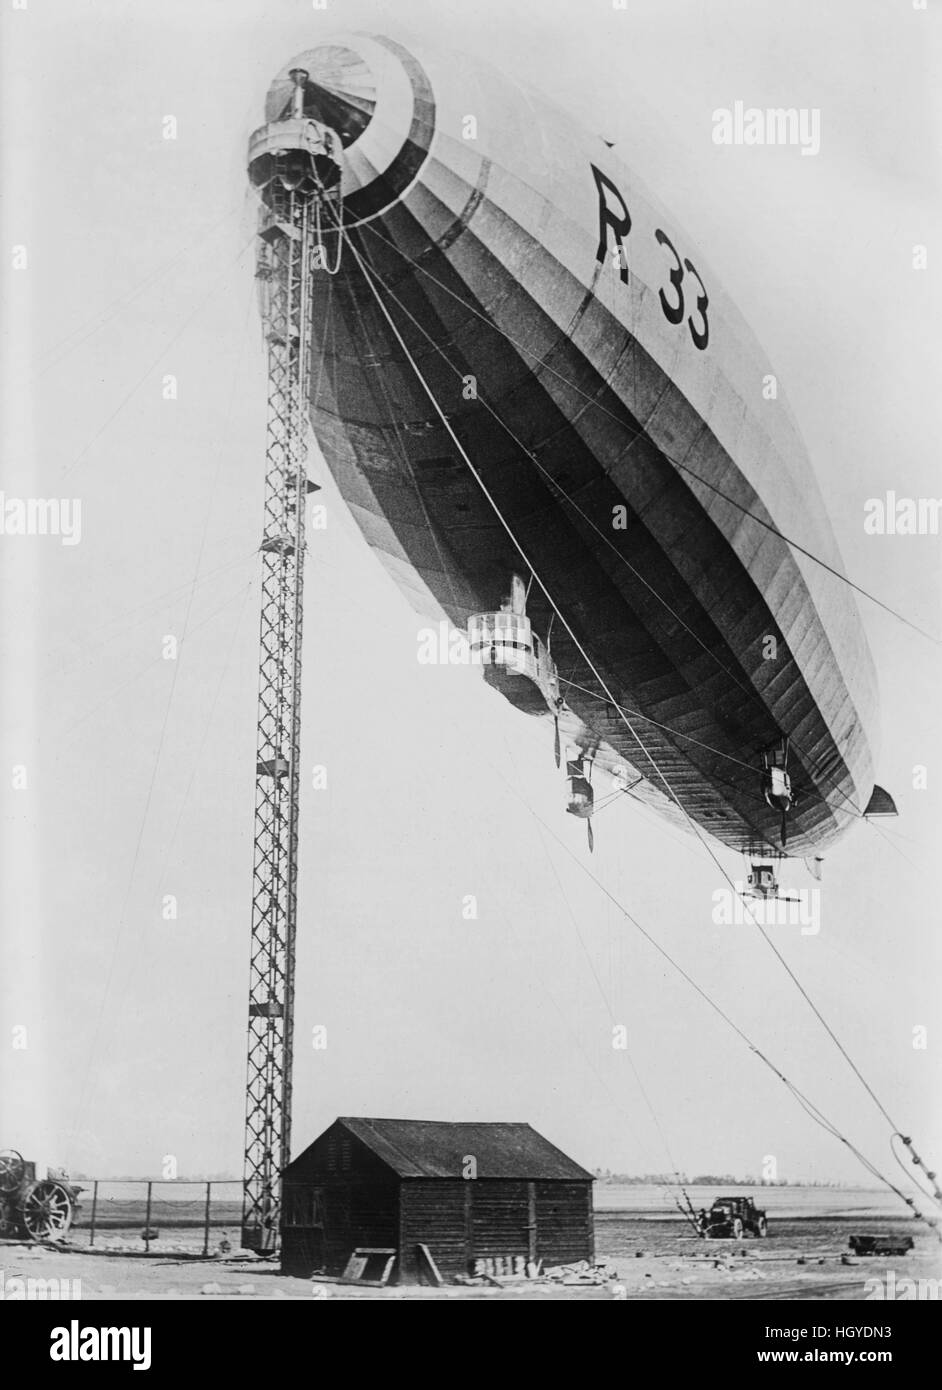 R 33 Airship au mât d'amarrage, Bain News Service, 1921 Banque D'Images